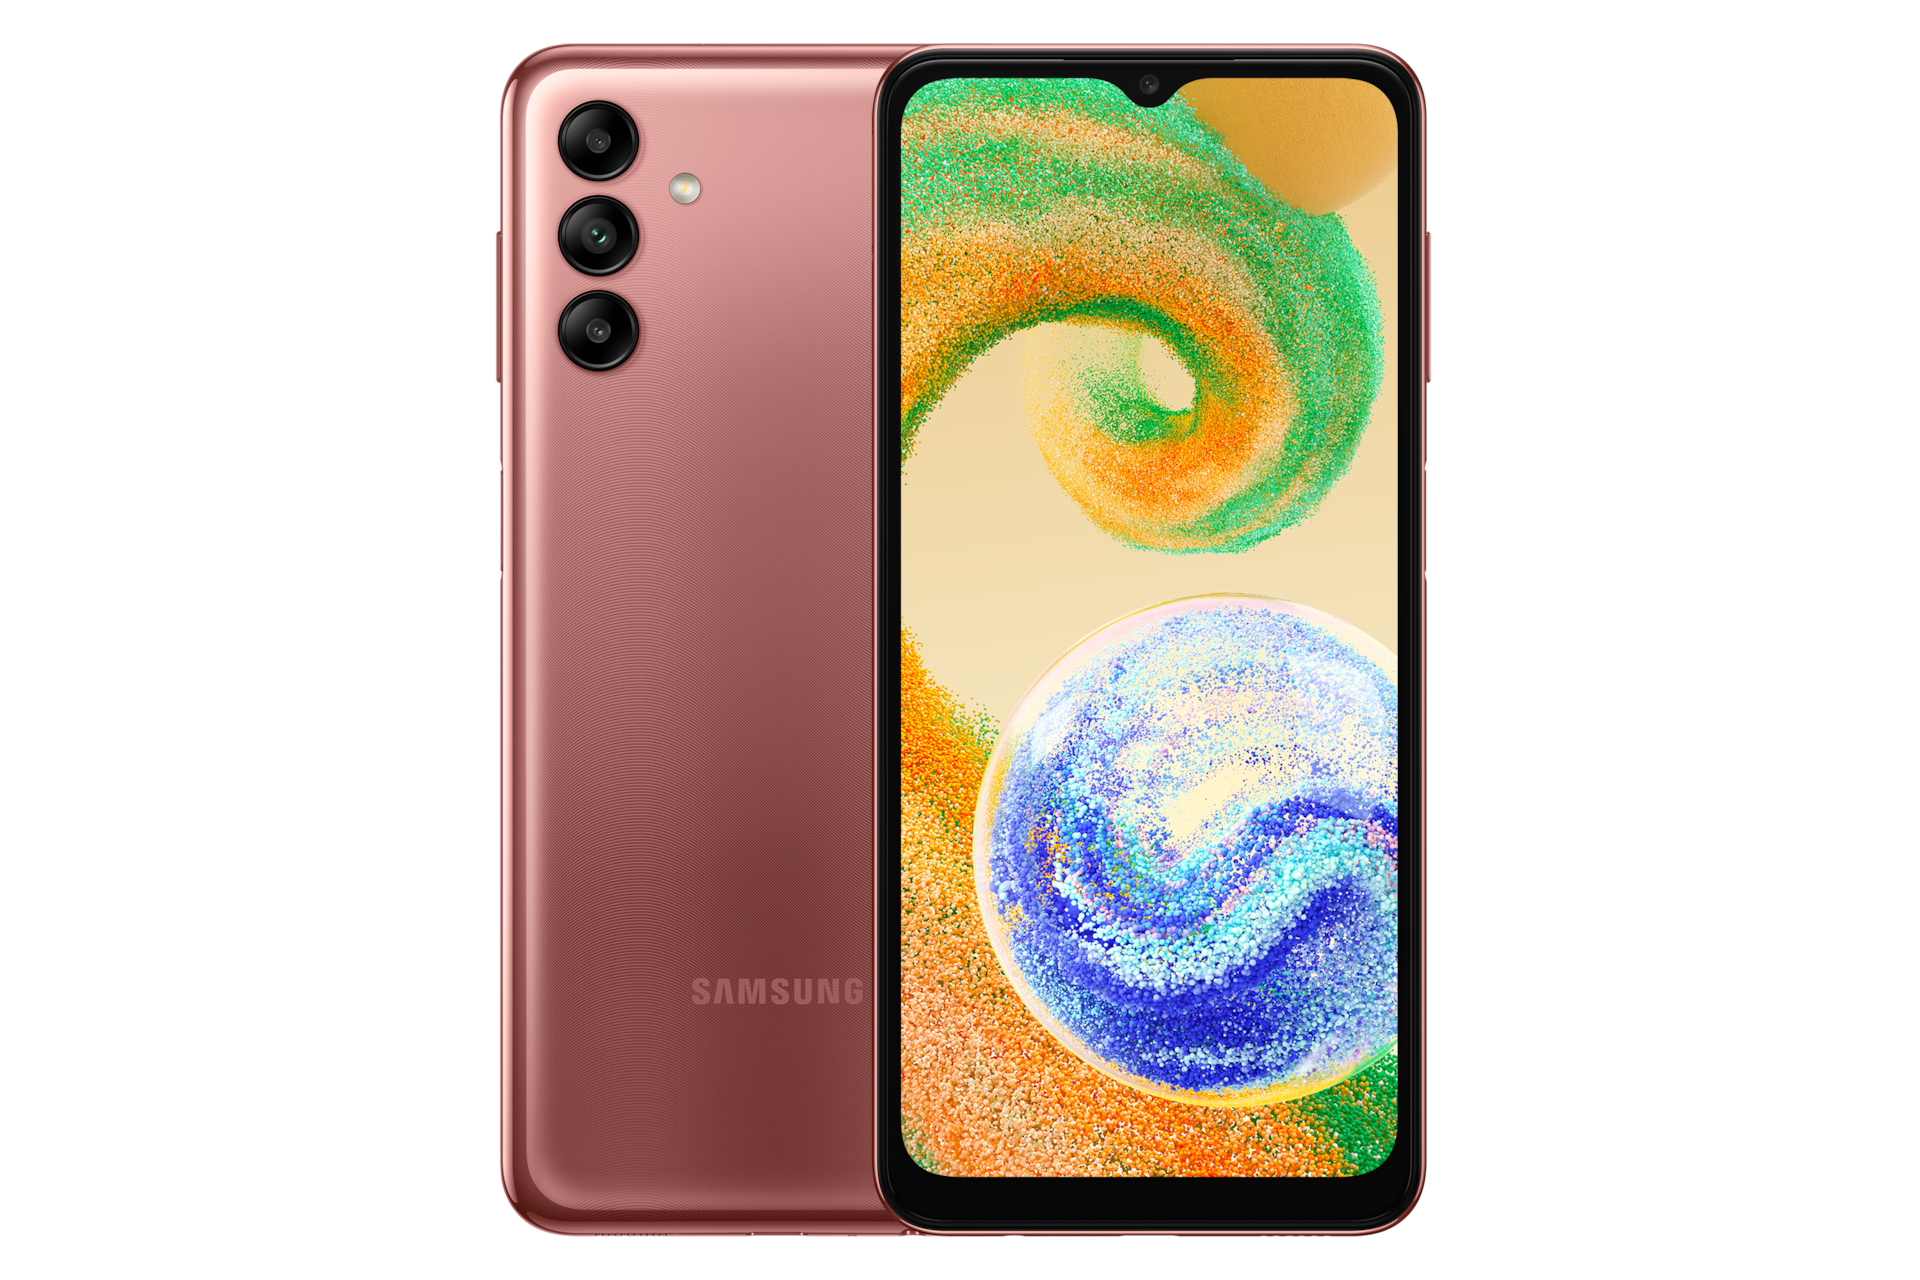 Ketahui harga Samsung A04s garansi resmi SEIN, hadir dengan layar PLS LCD 6,5 inci. Lihat model HP Samsung A04s Orange Copper di website Samsung Indonesia.